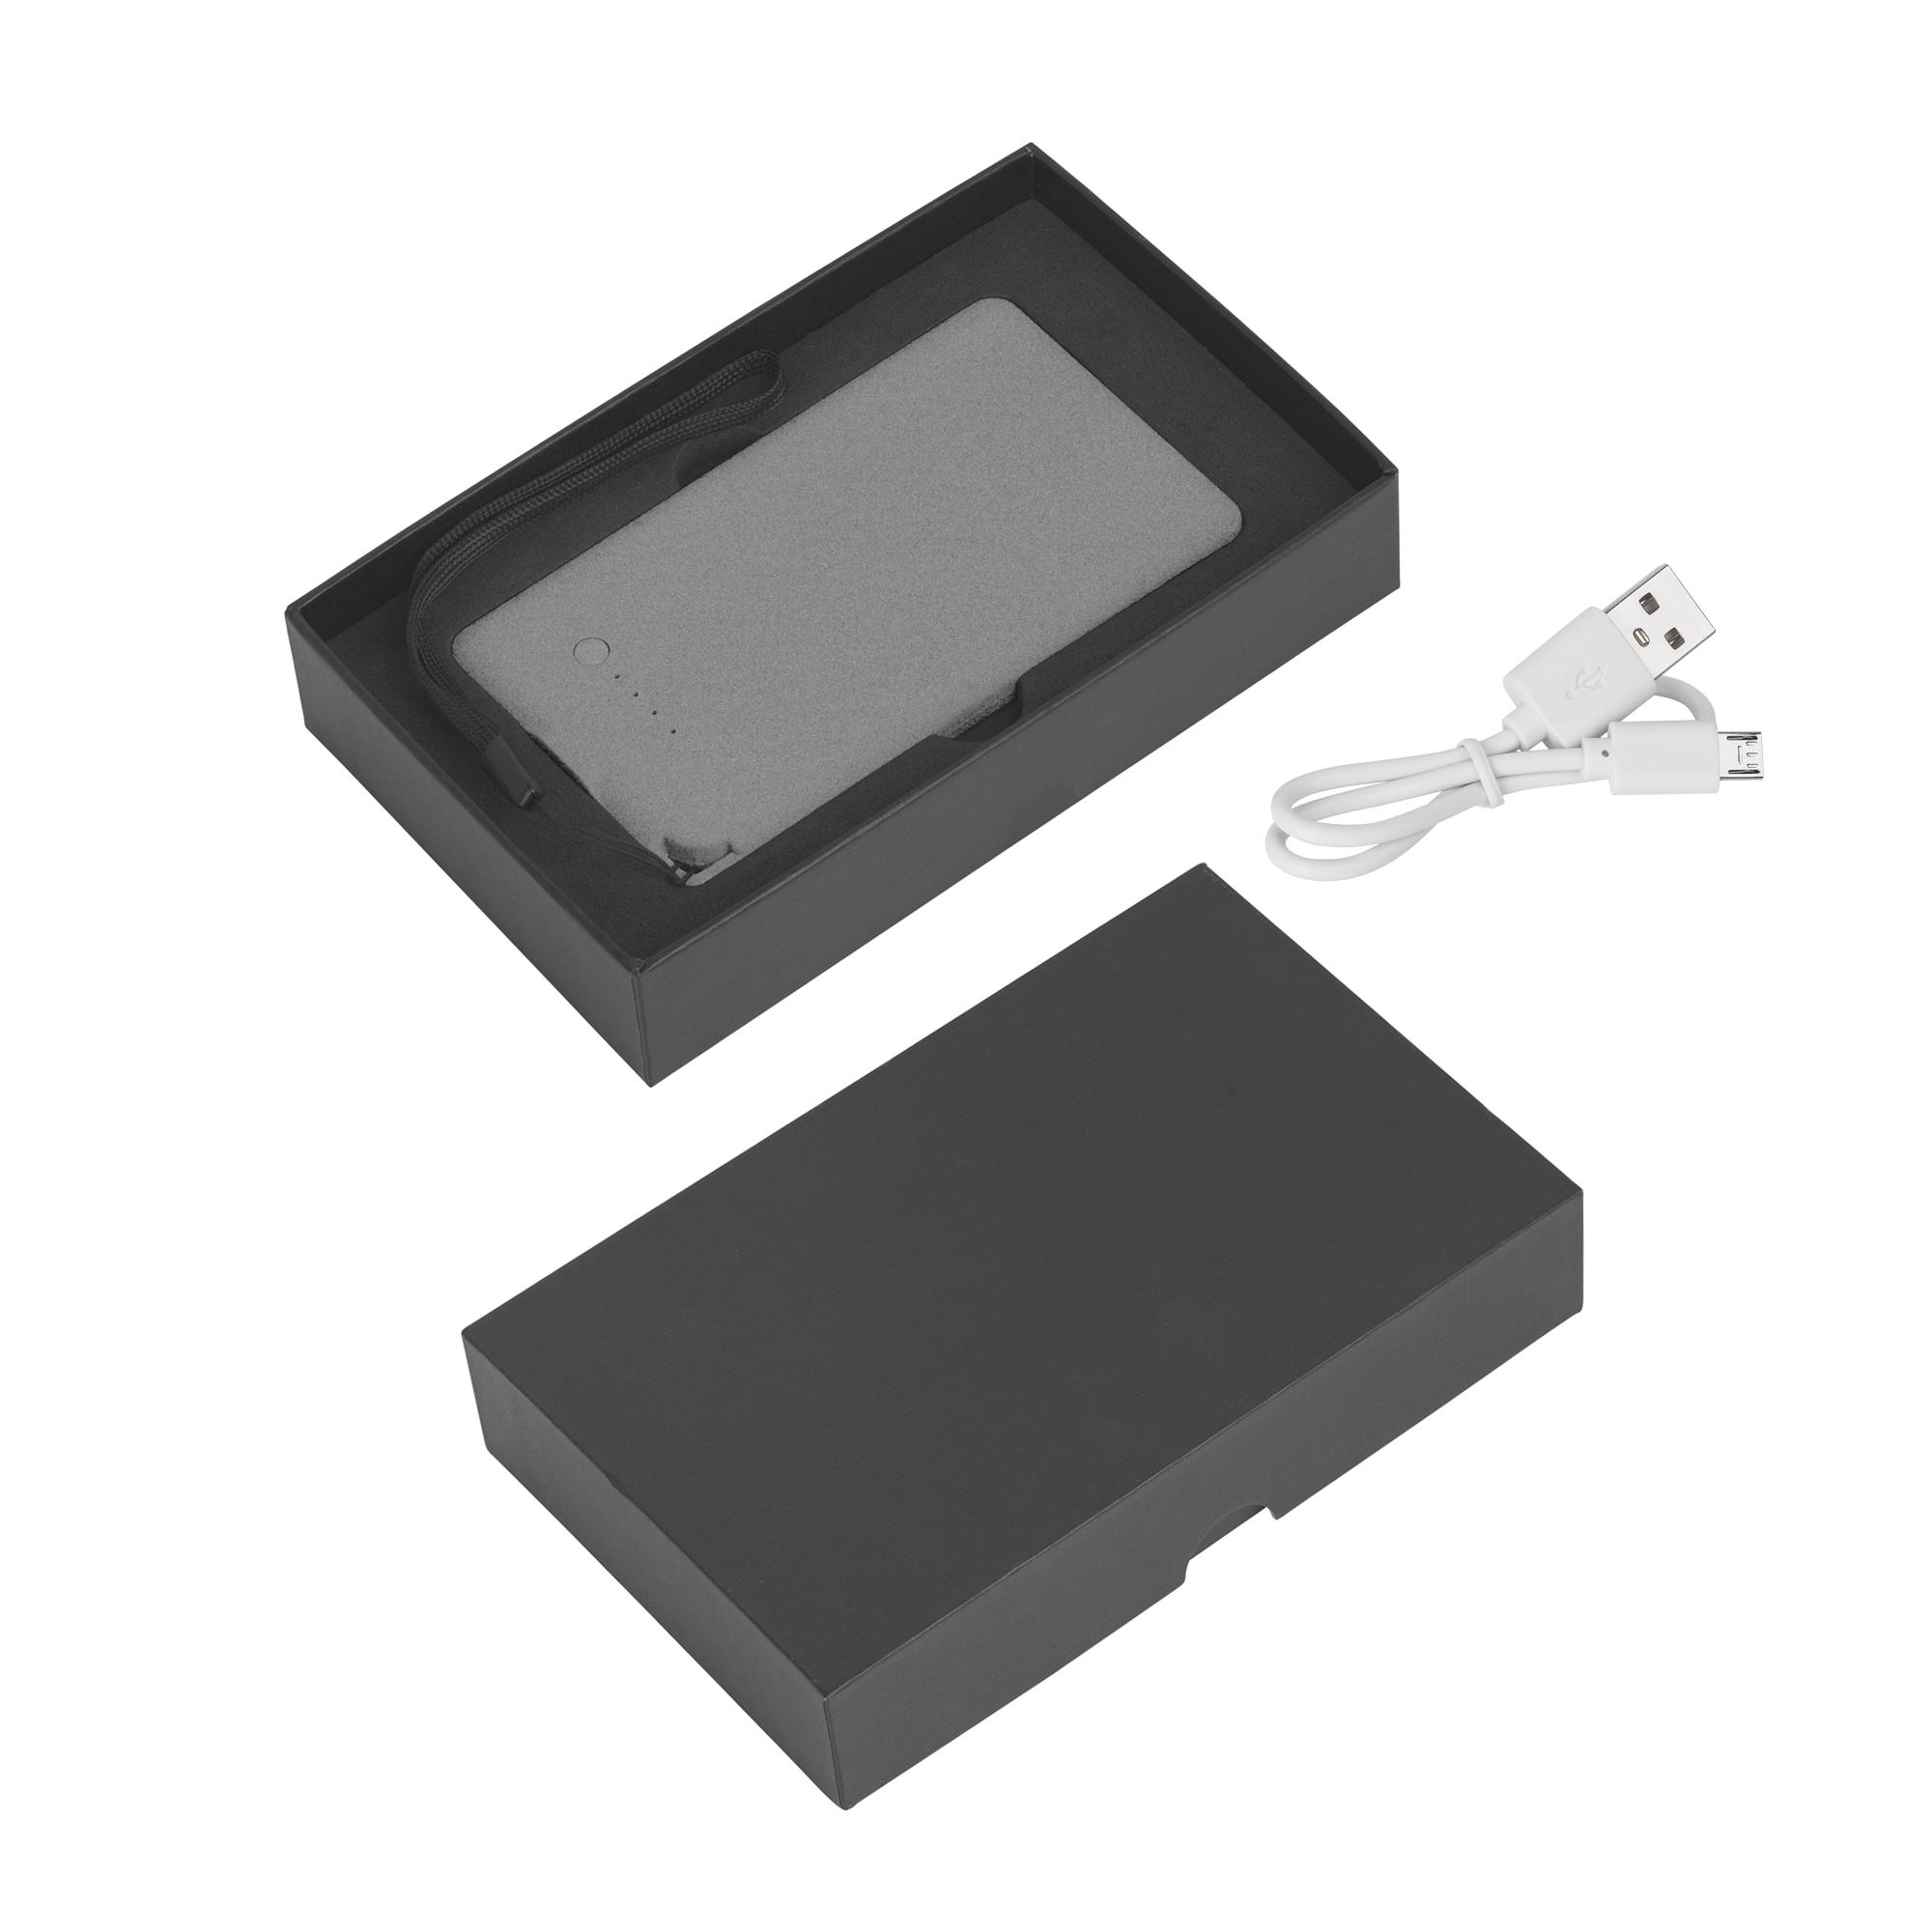 Зарядное устройство "Камень" с покрытием soft grip, 4000 mAh в подарочной коробке, цвет серый, фото 4